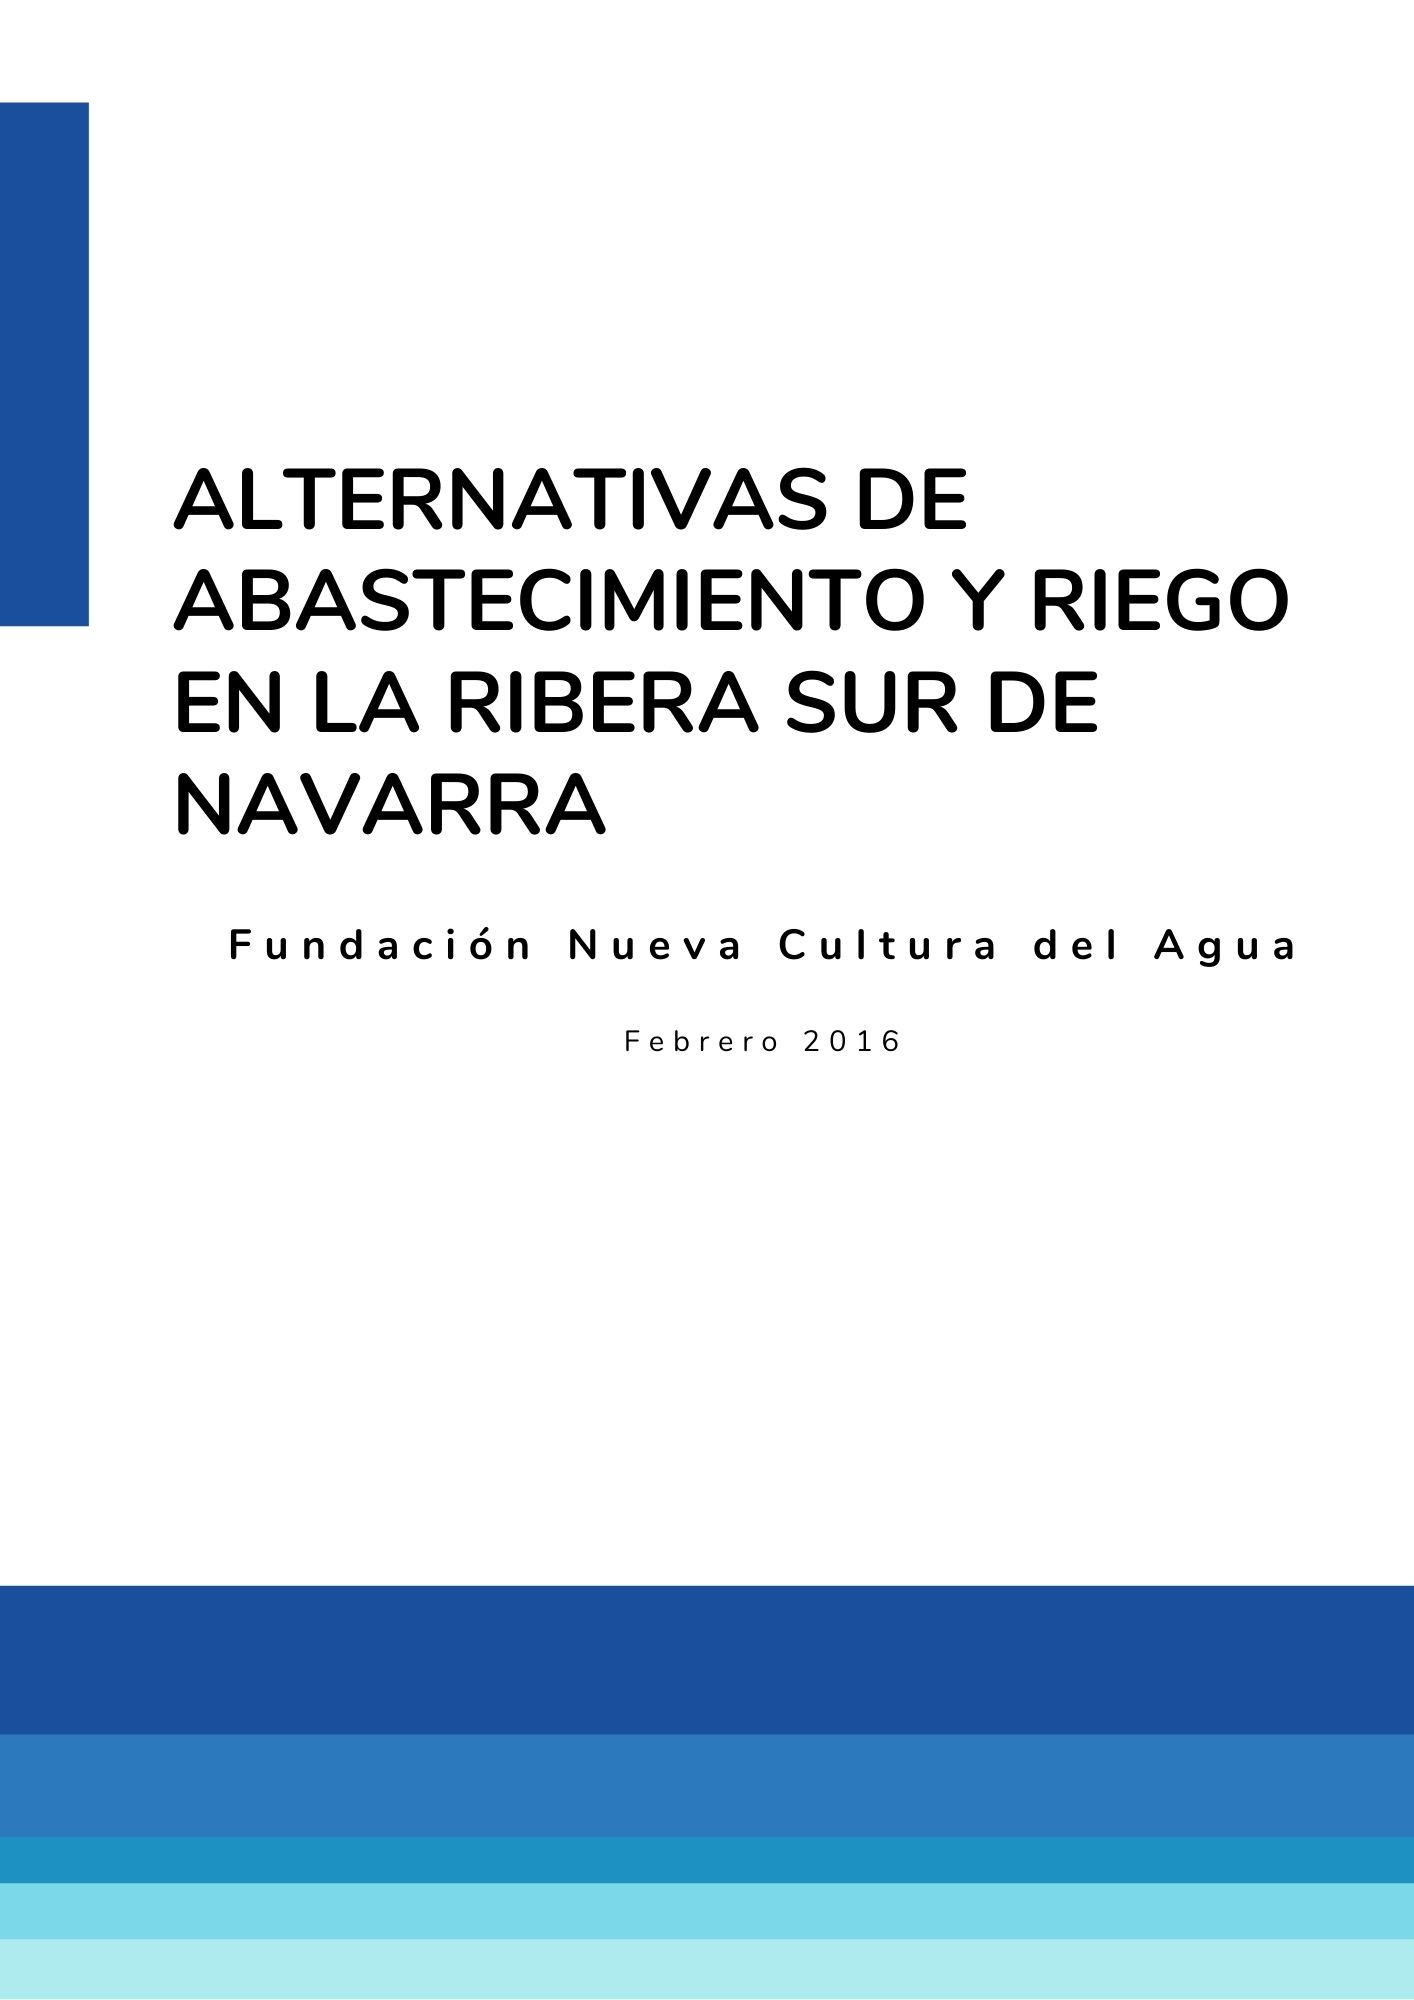 Alternativas al abastecimiento y riego en la Ribera sur de Navarra